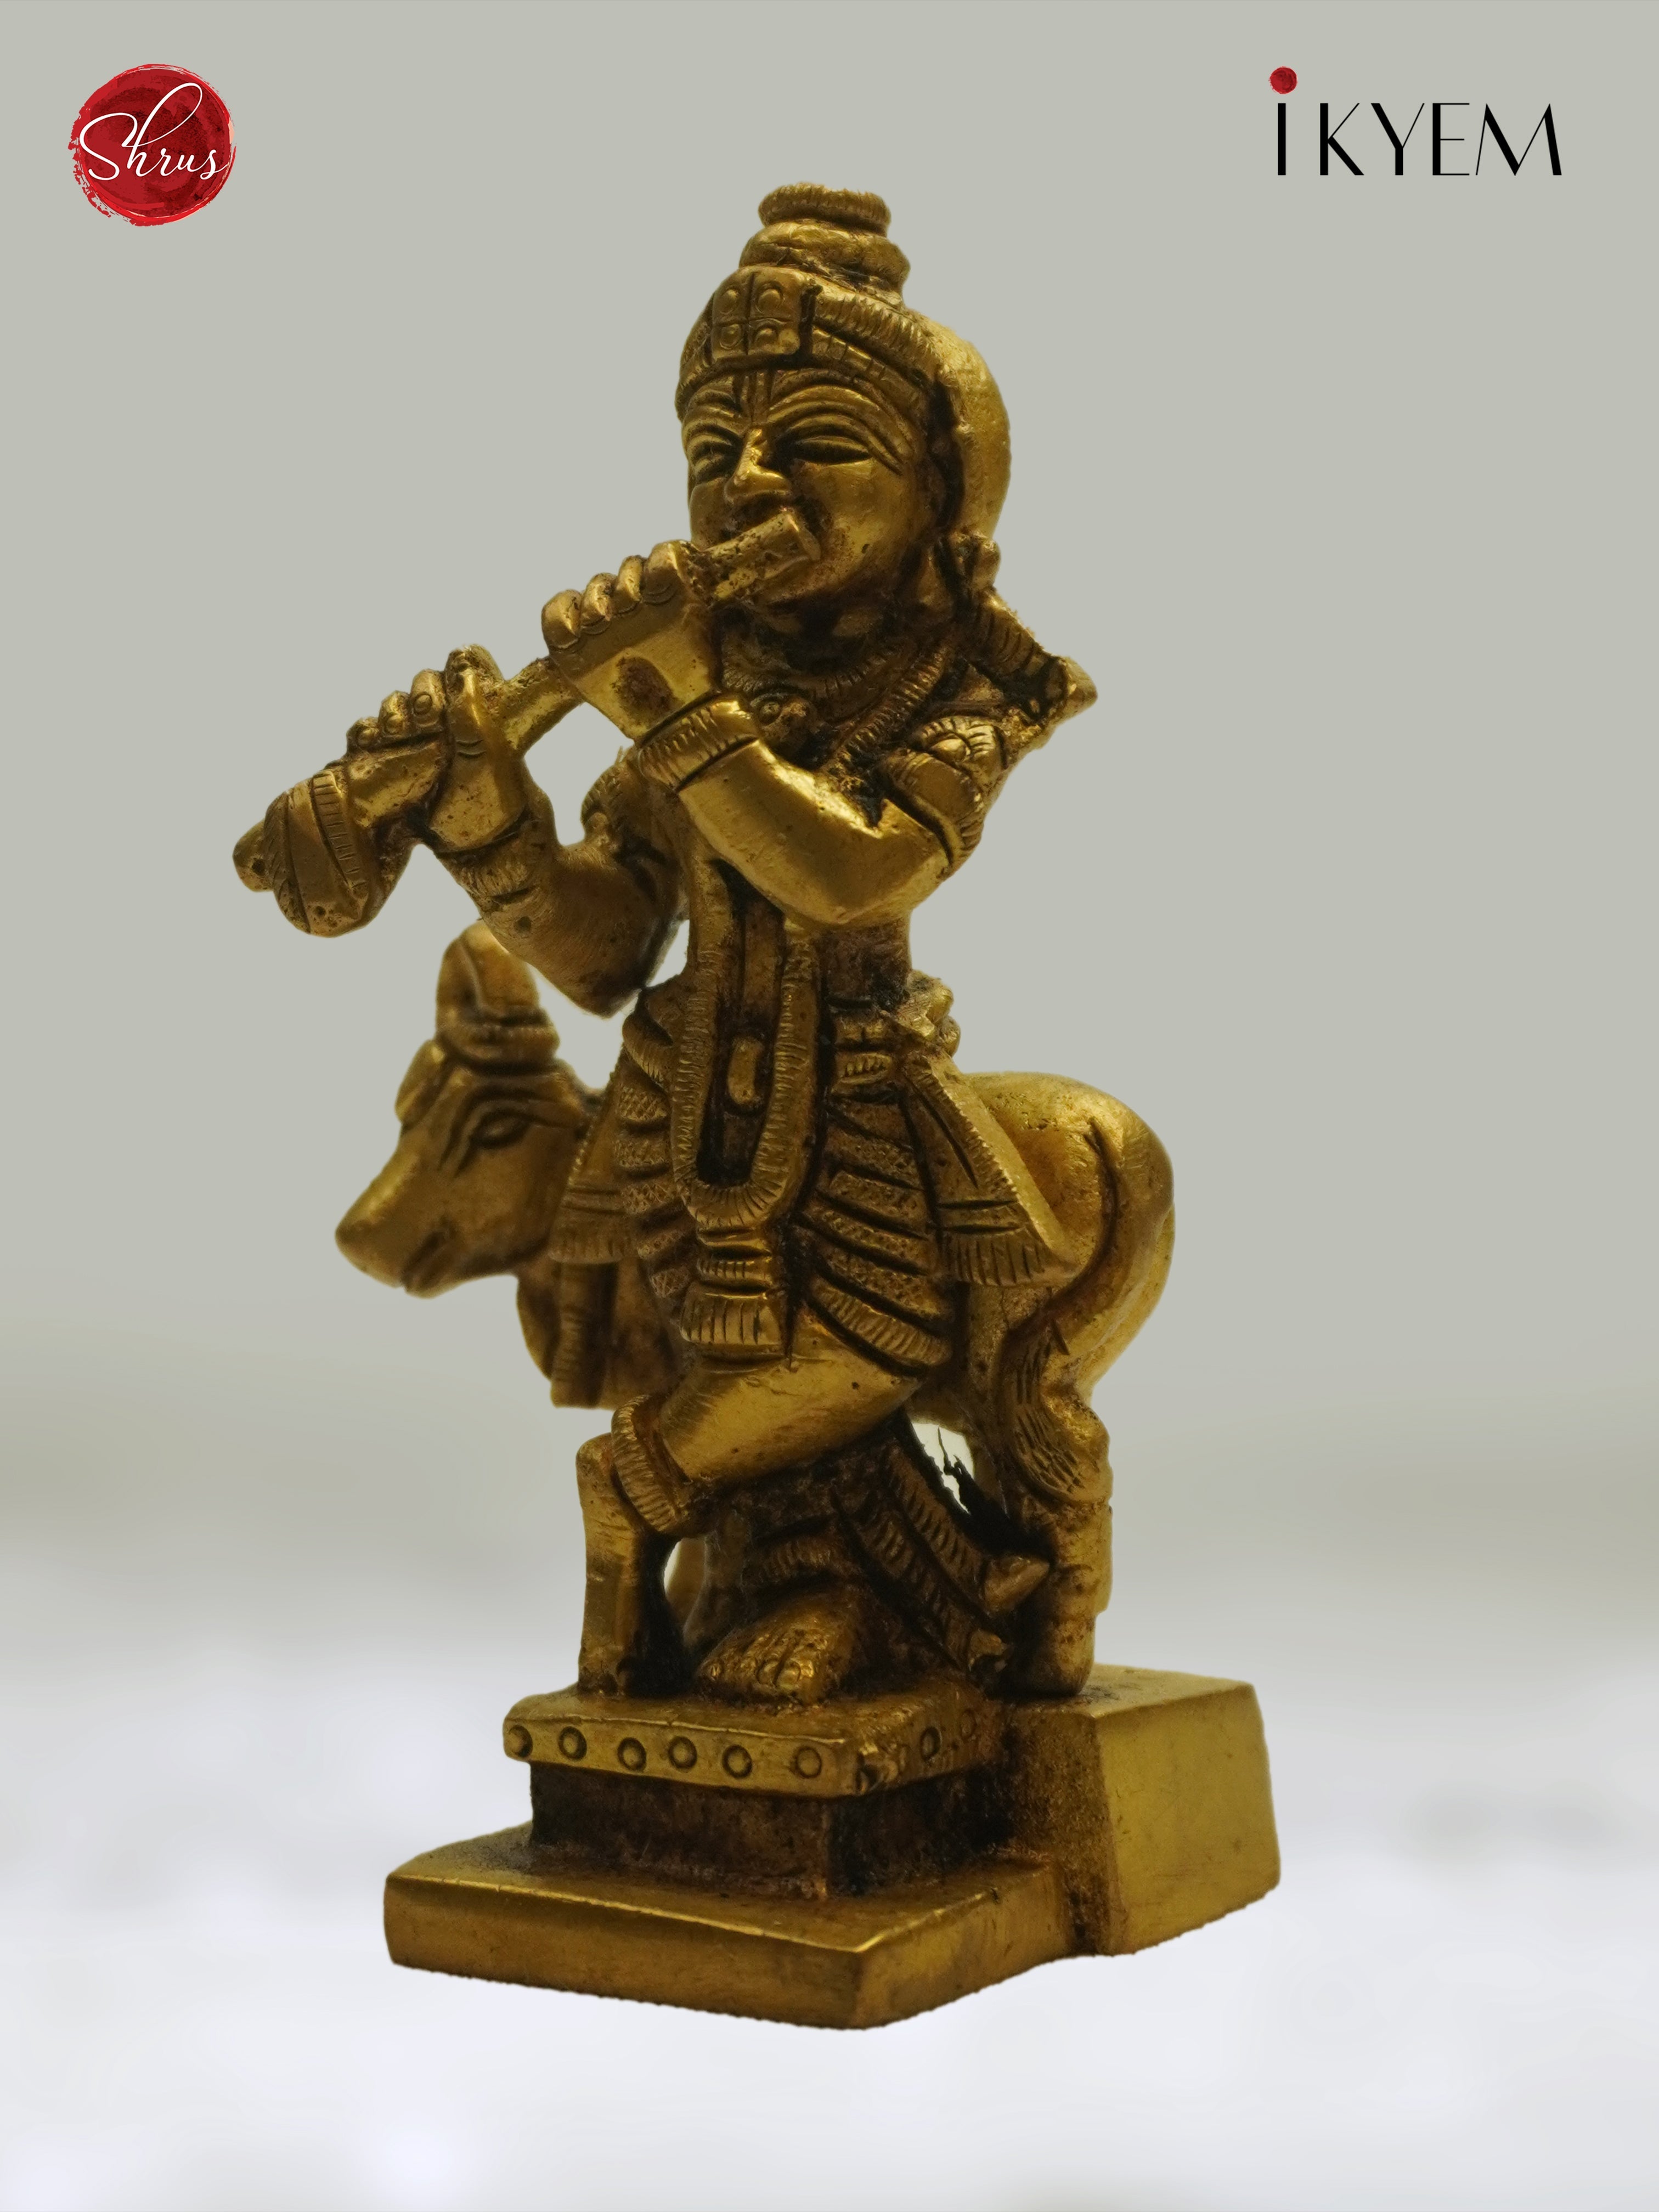 Lord krishna - Idol